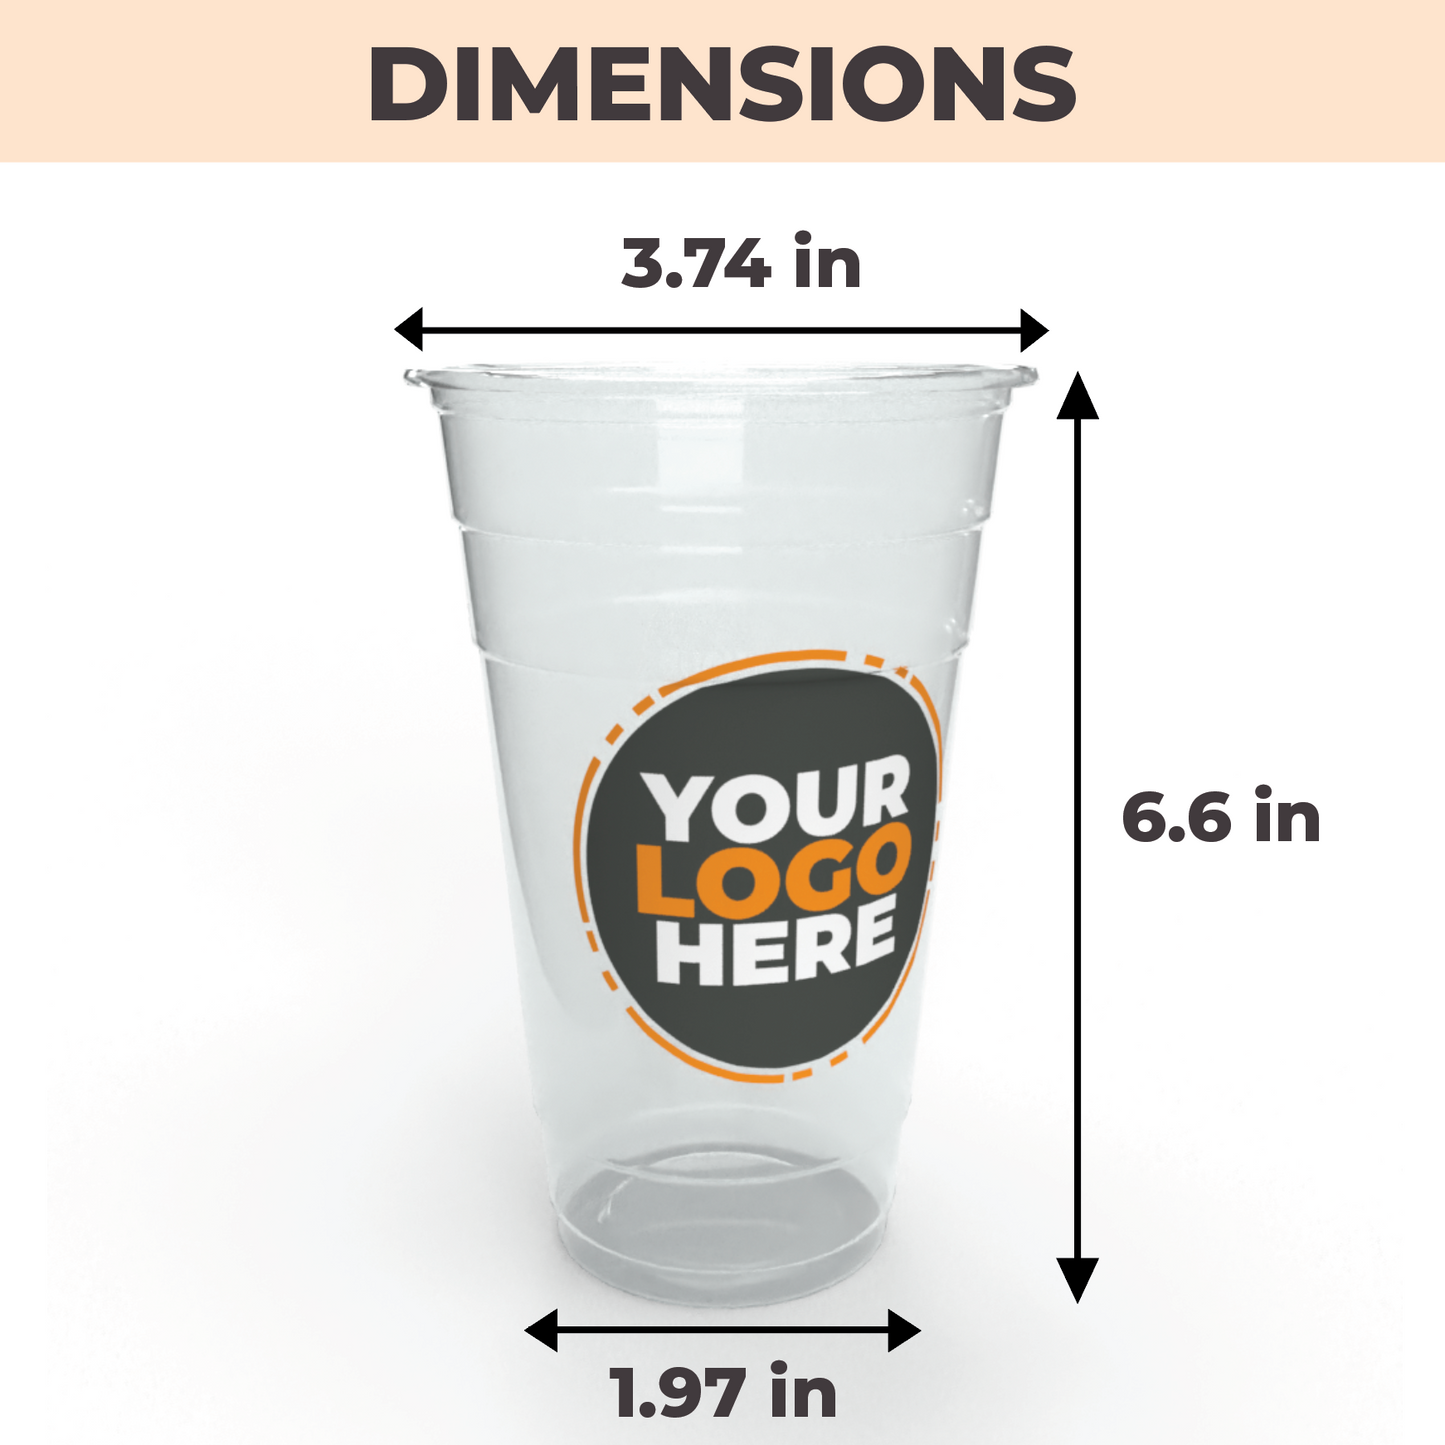 Vaso de plástico transparente personalizado - Vaso de plástico PET de 24 oz para bebidas frías